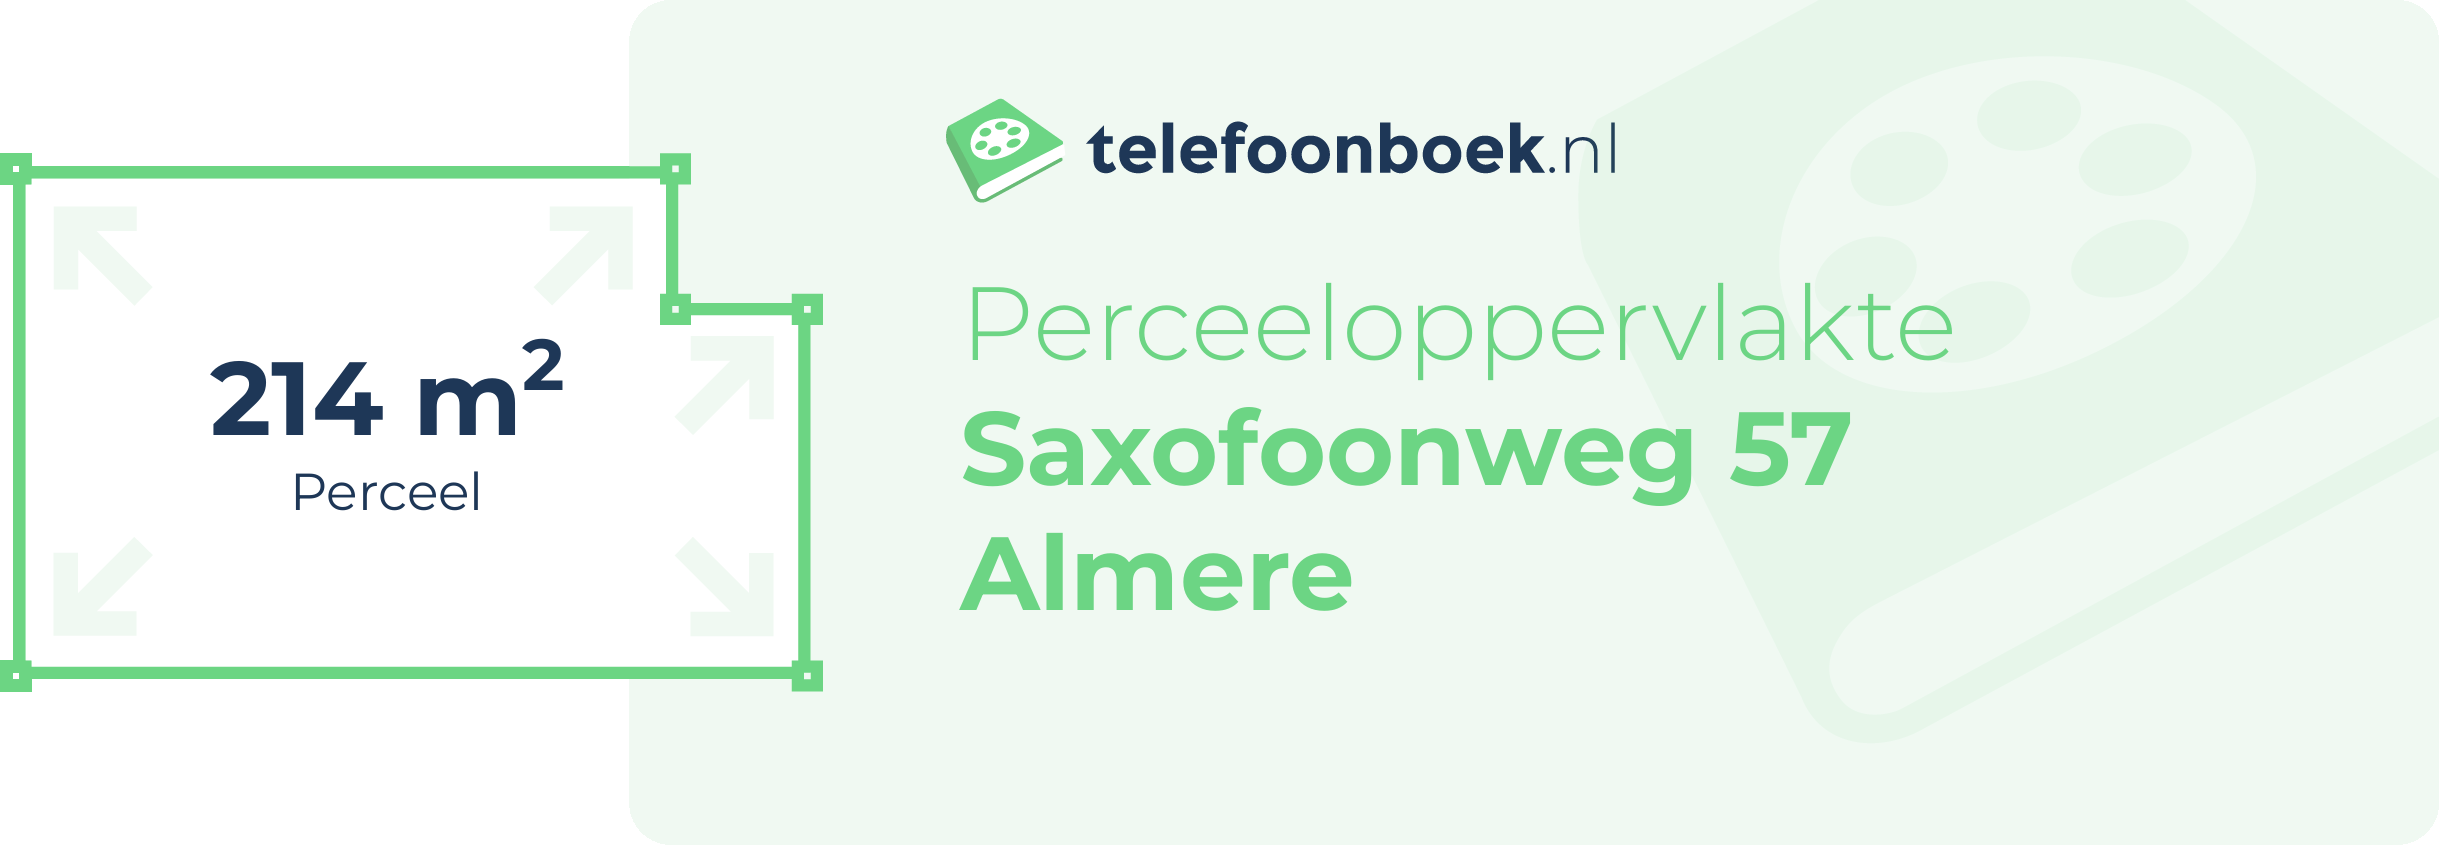 Perceeloppervlakte Saxofoonweg 57 Almere